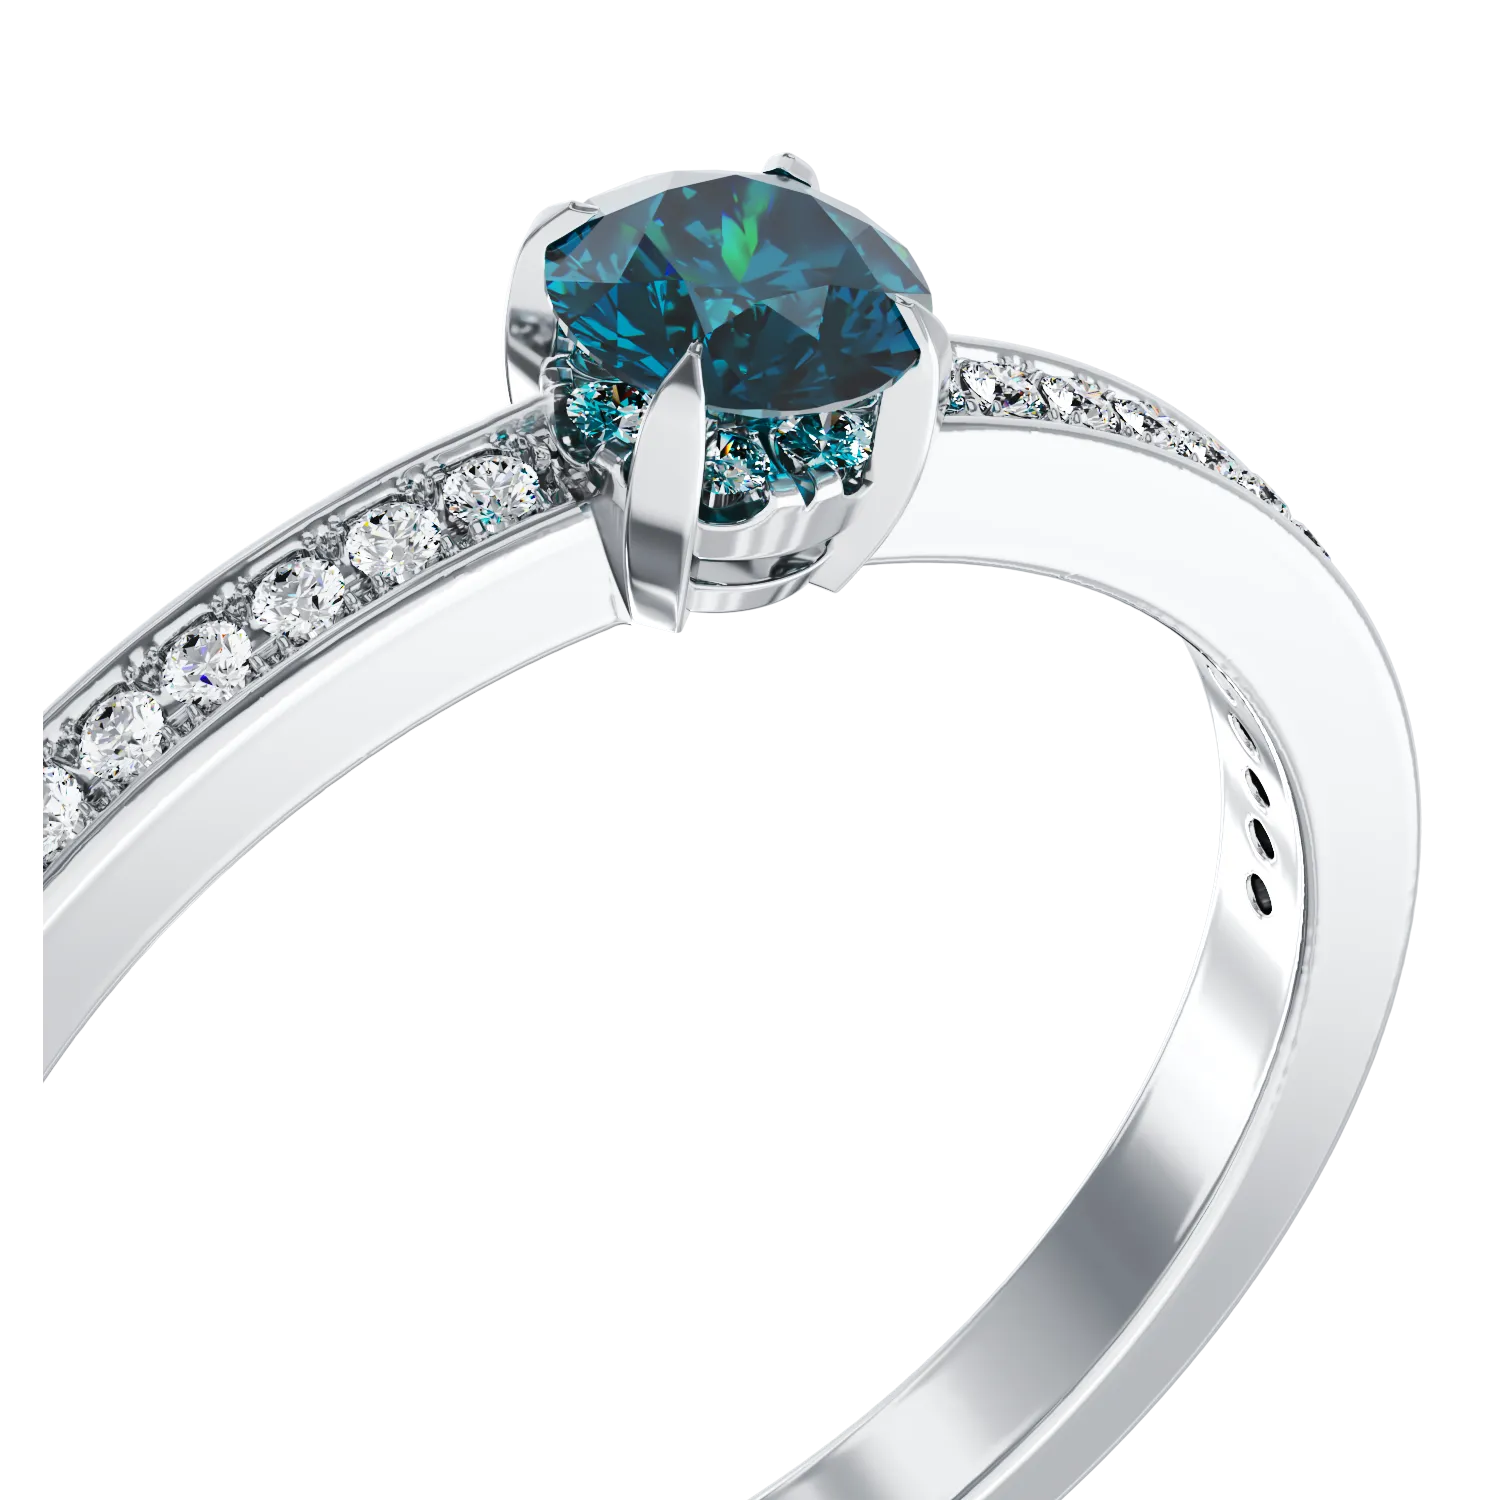 18 karátos fehérarany eljegyzési gyűrű 0.32 karátos kék gyémánttal és 0.19 karátos tiszta gyémántokkal